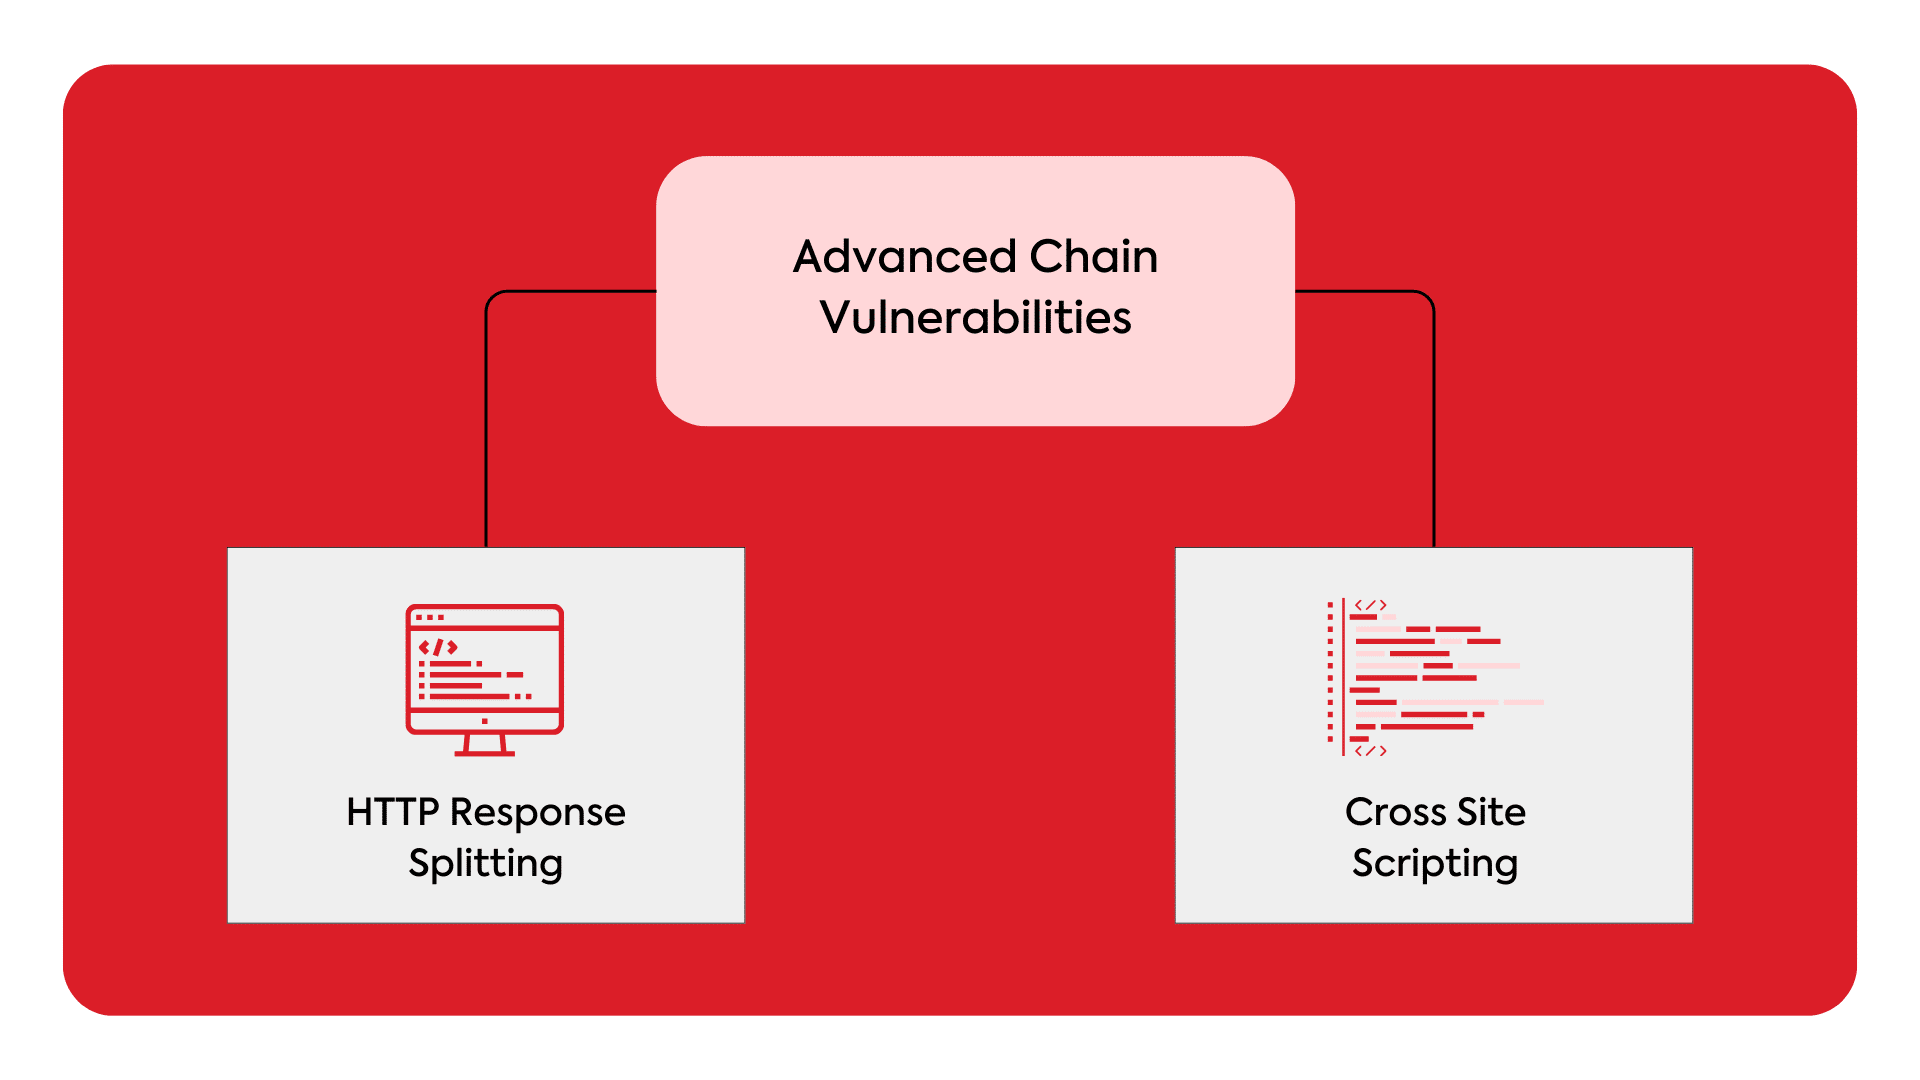 Advanced Chain Vulnerabilities